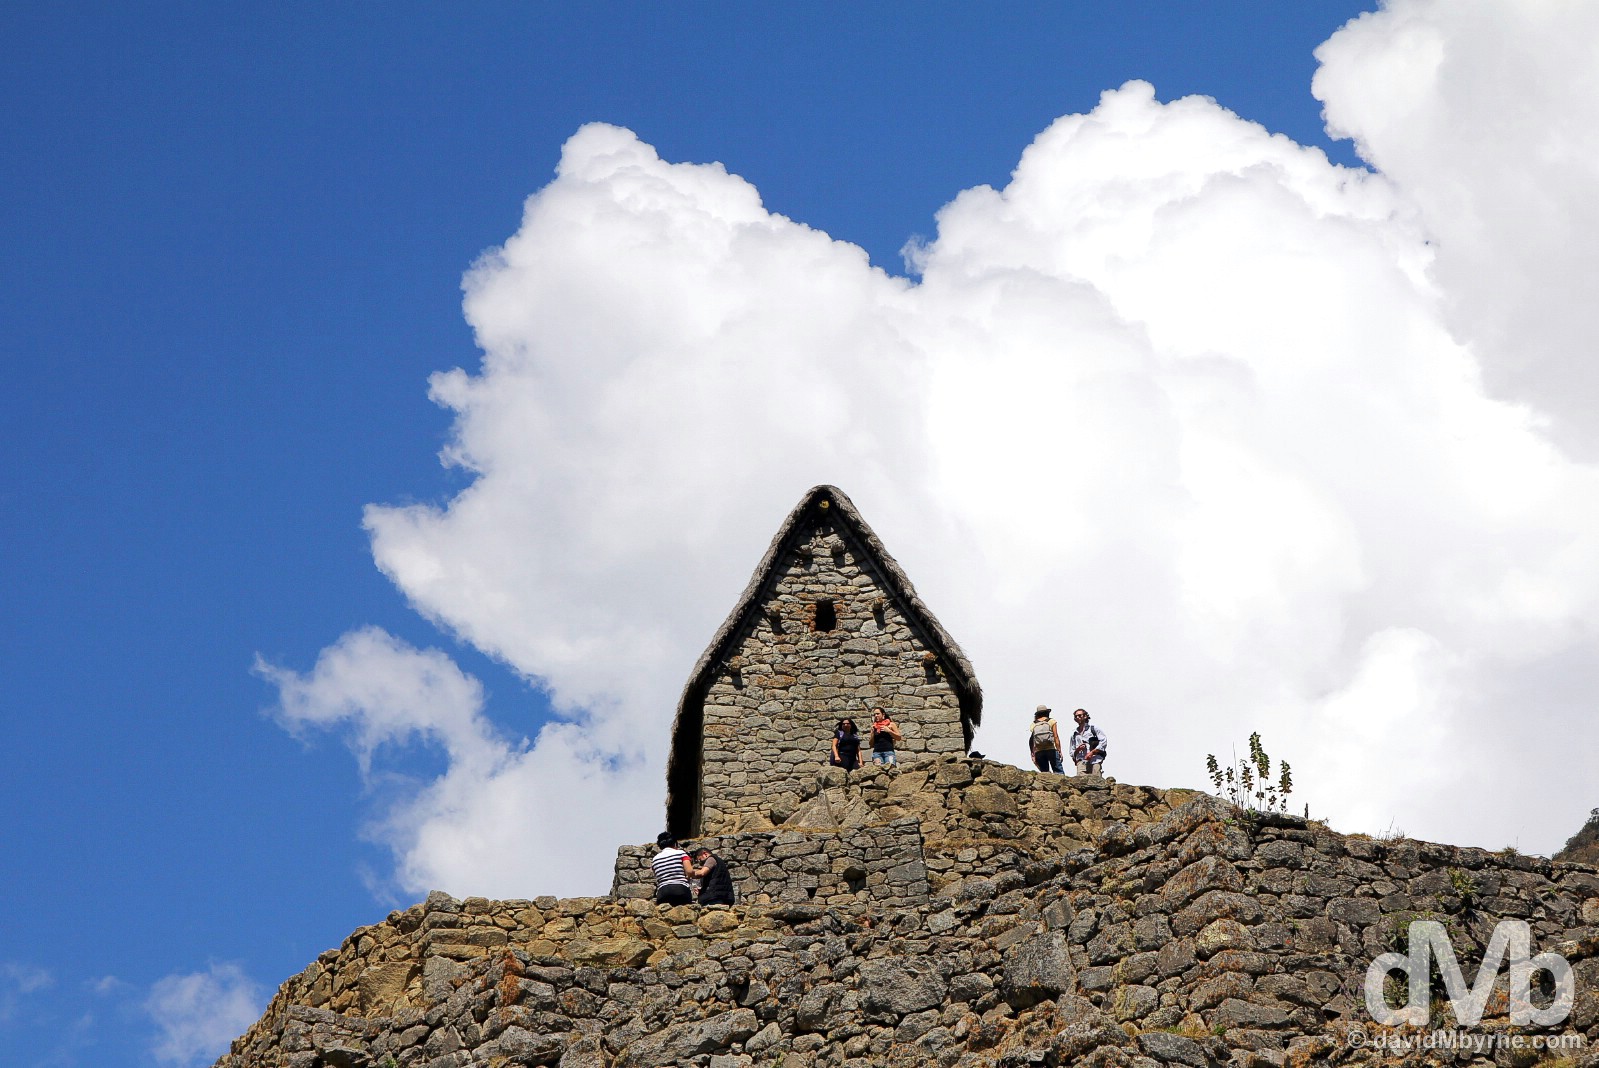 Guardhouse, Machu Picchu, Peru. August 15, 2015.